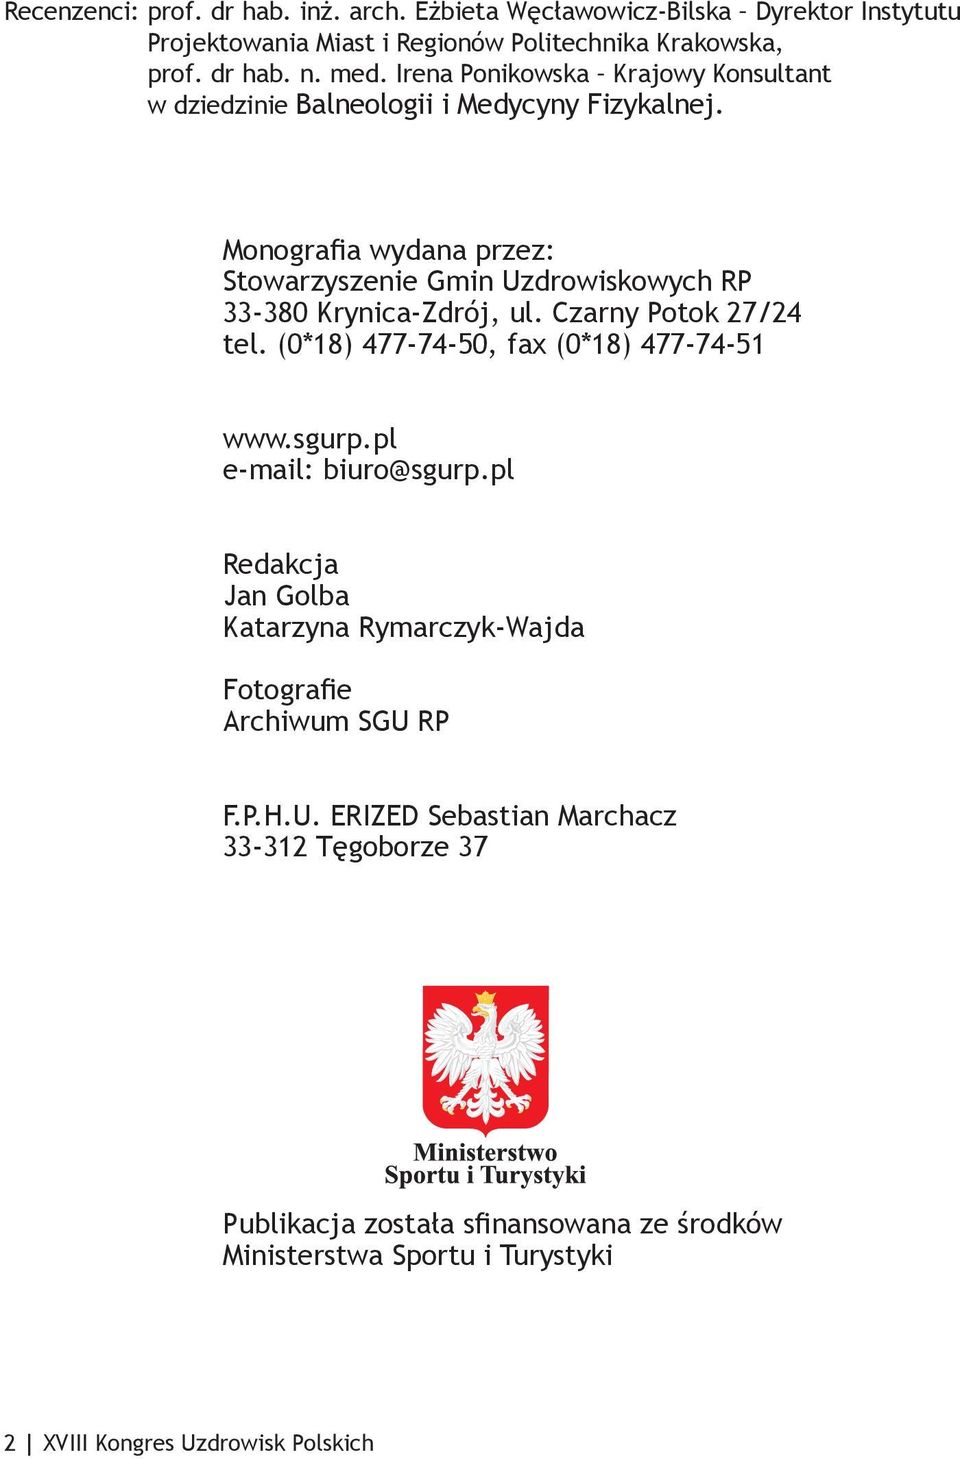 Monografia wydana przez: Stowarzyszenie Gmin Uzdrowiskowych RP 33-380 Krynica-Zdrój, ul. Czarny Potok 27/24 tel. (0*18) 477-74-50, fax (0*18) 477-74-51 www.sgurp.